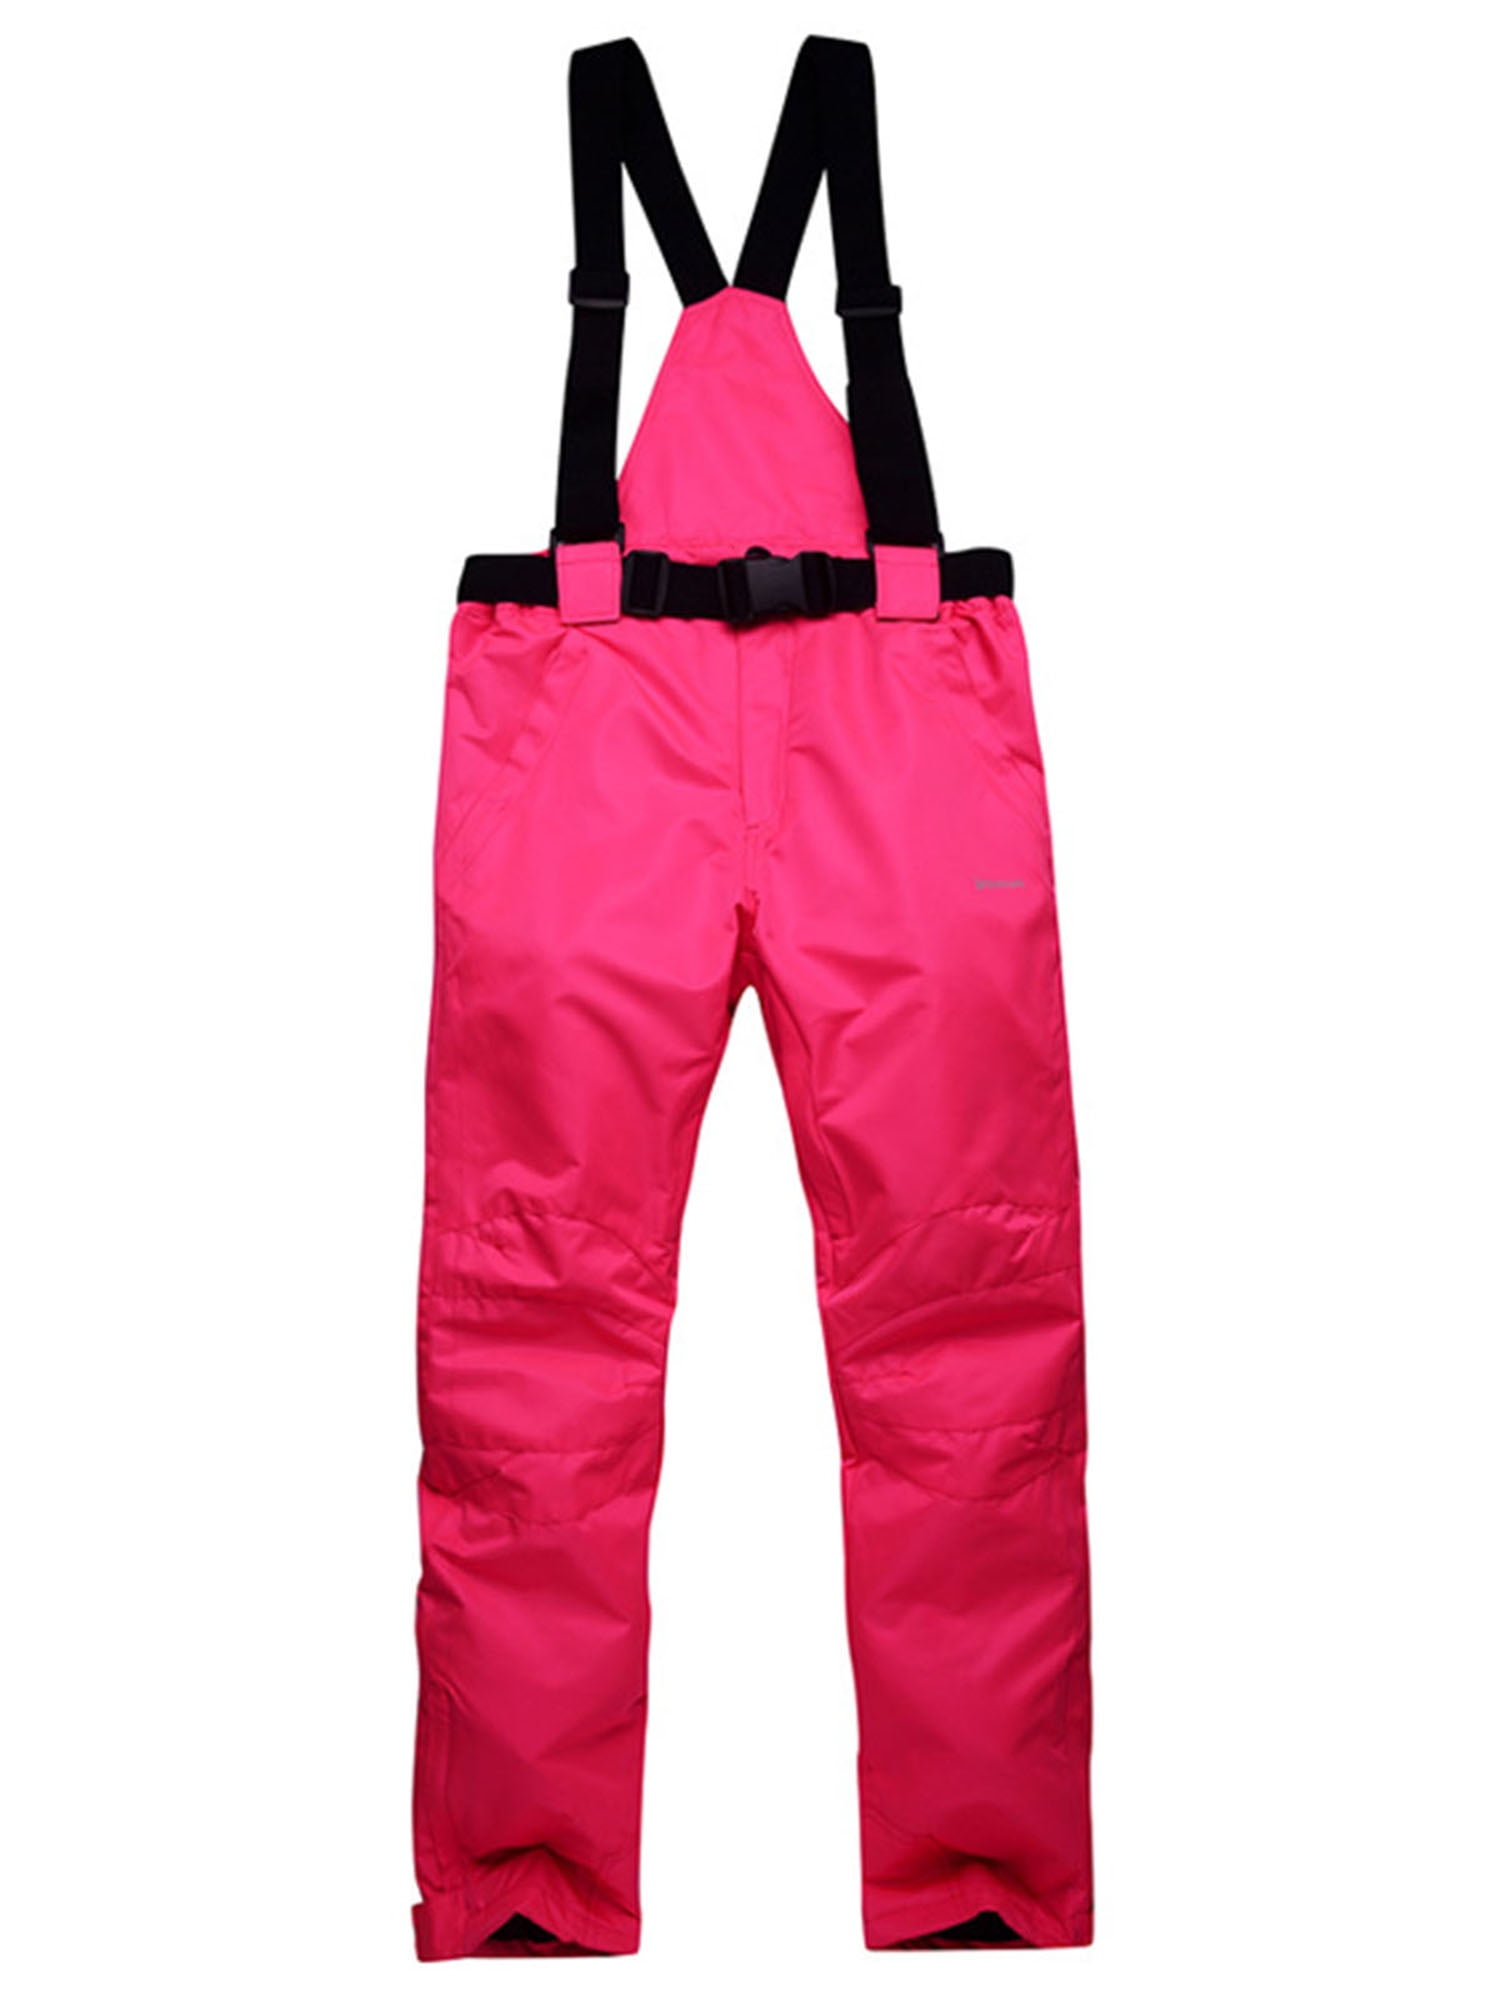 Men/Women Winter Ski Pants Waterproof Windproof Warm Padded Trousers Outdoor 